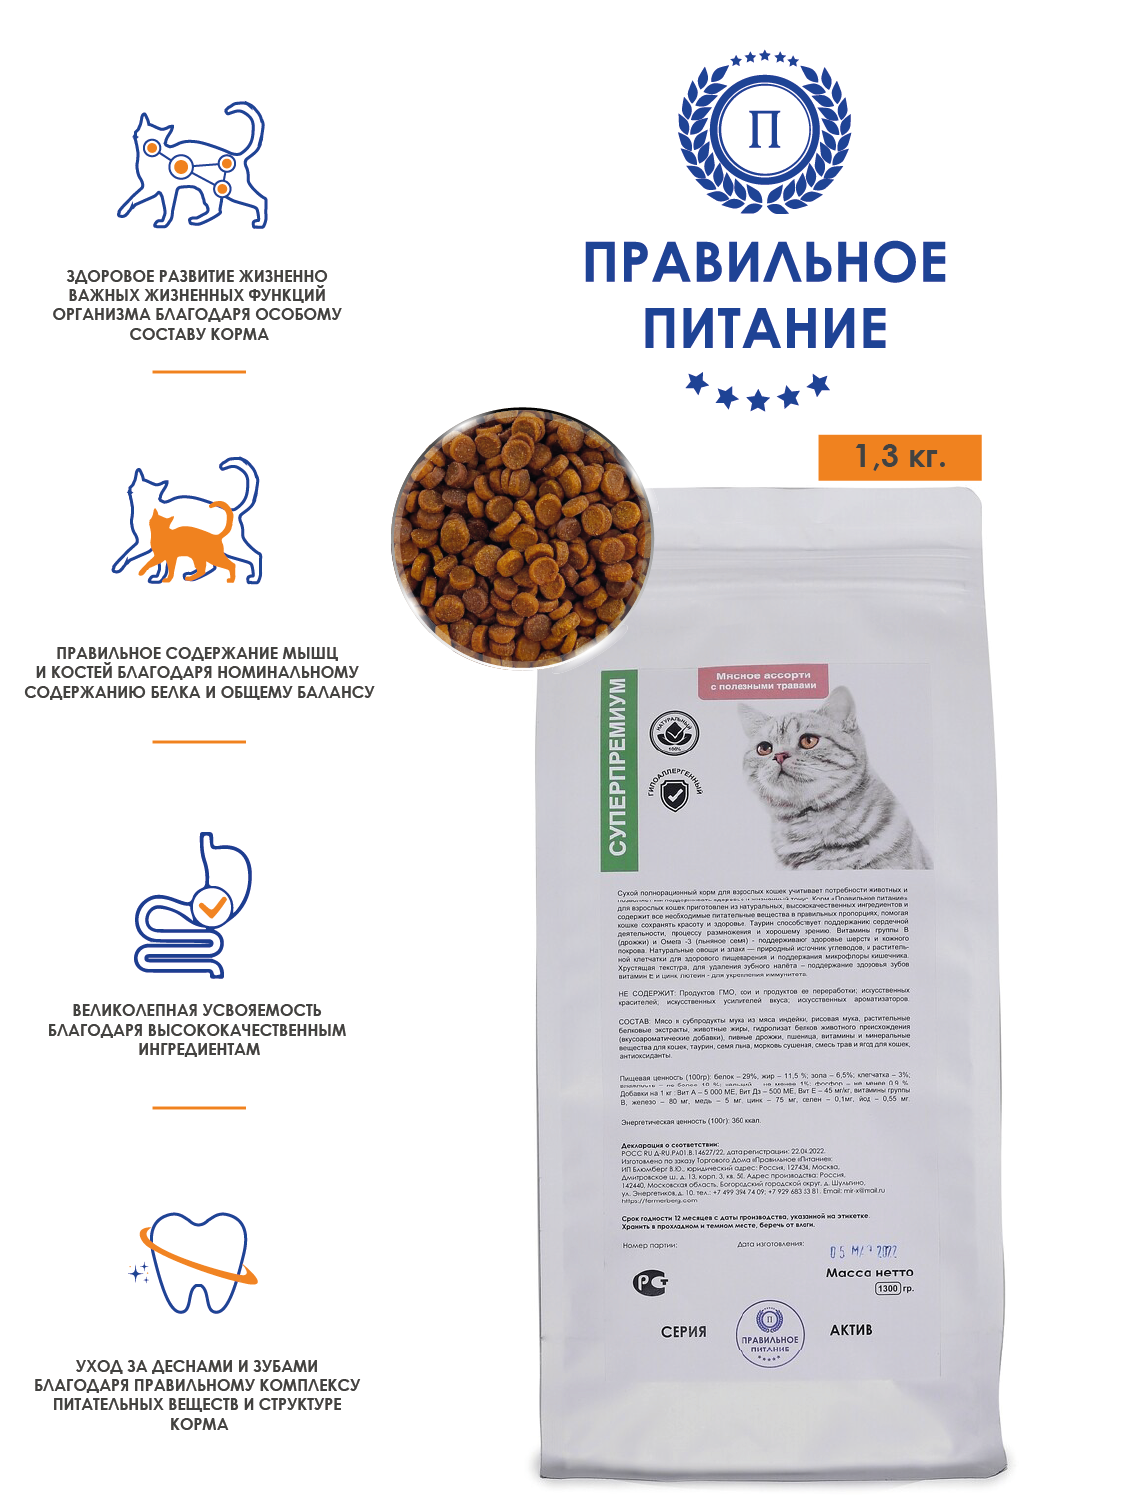 Сухой корм для взрослых кошек супер премиум - "Мясное ассорти", стоимость за упаковку - 1,3 кг.